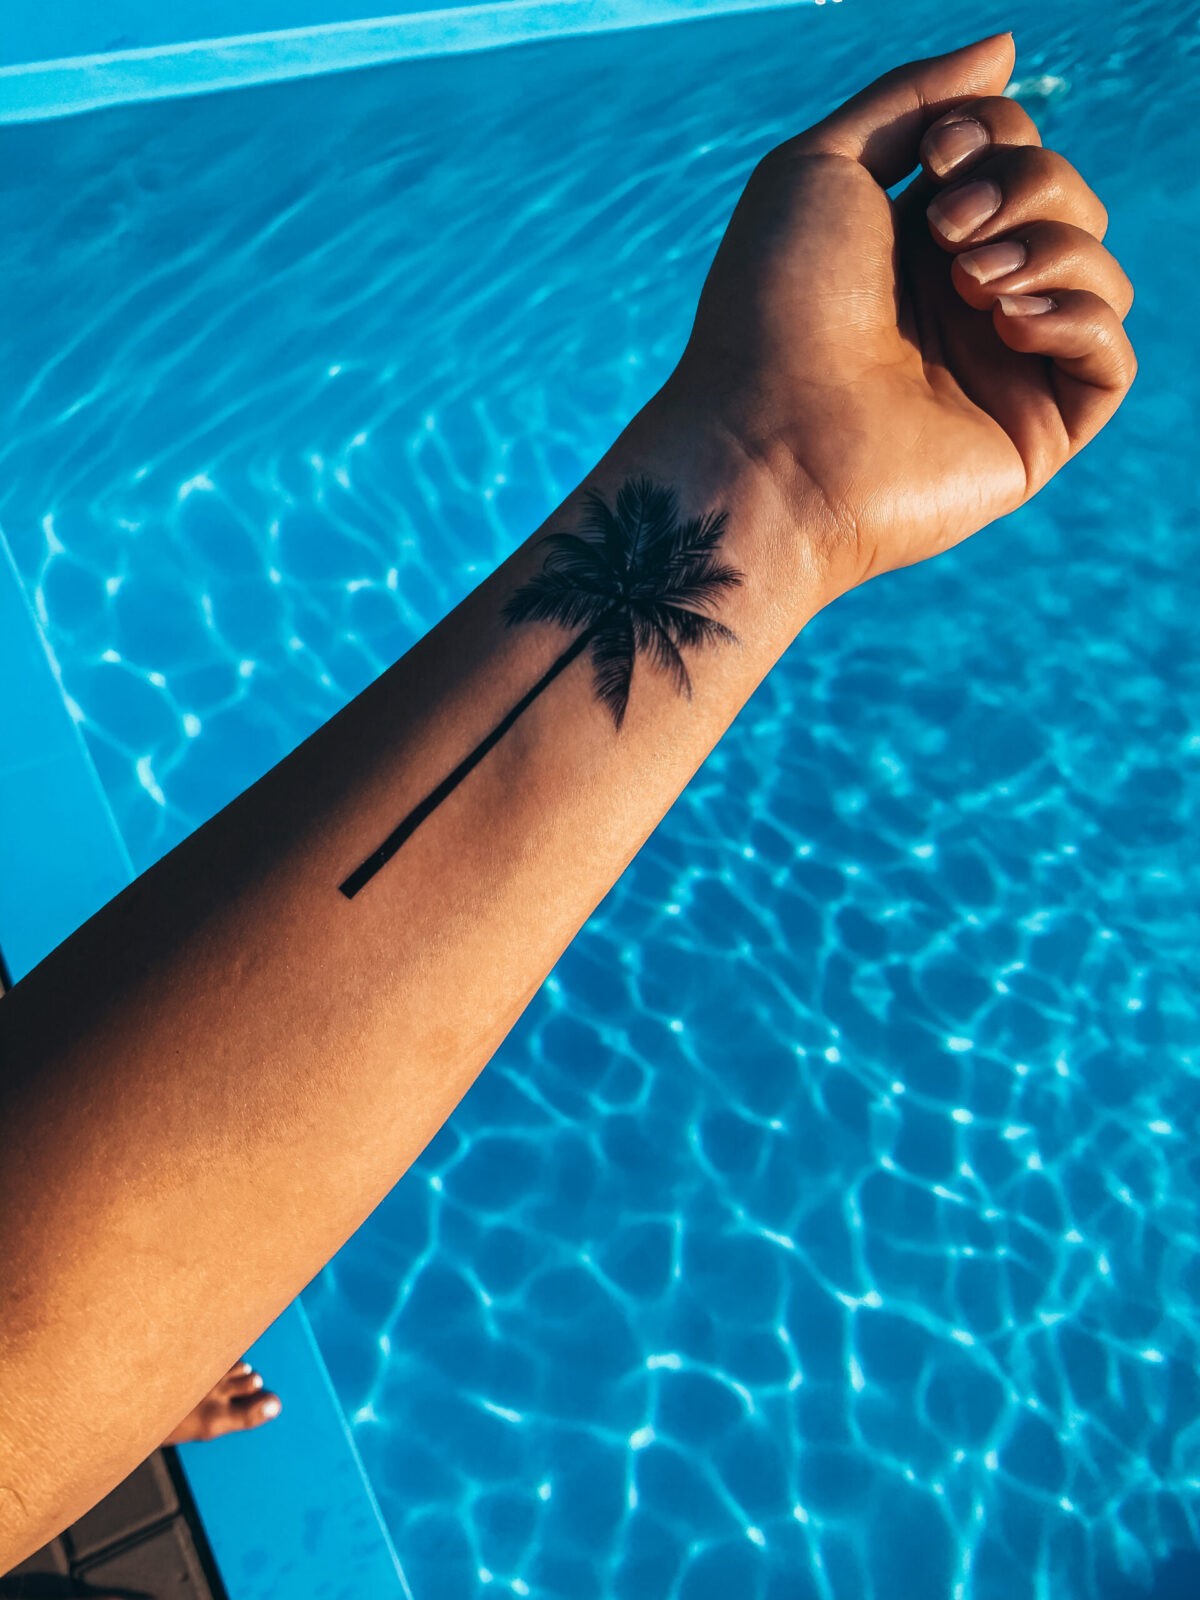 Dočasné tetování palma